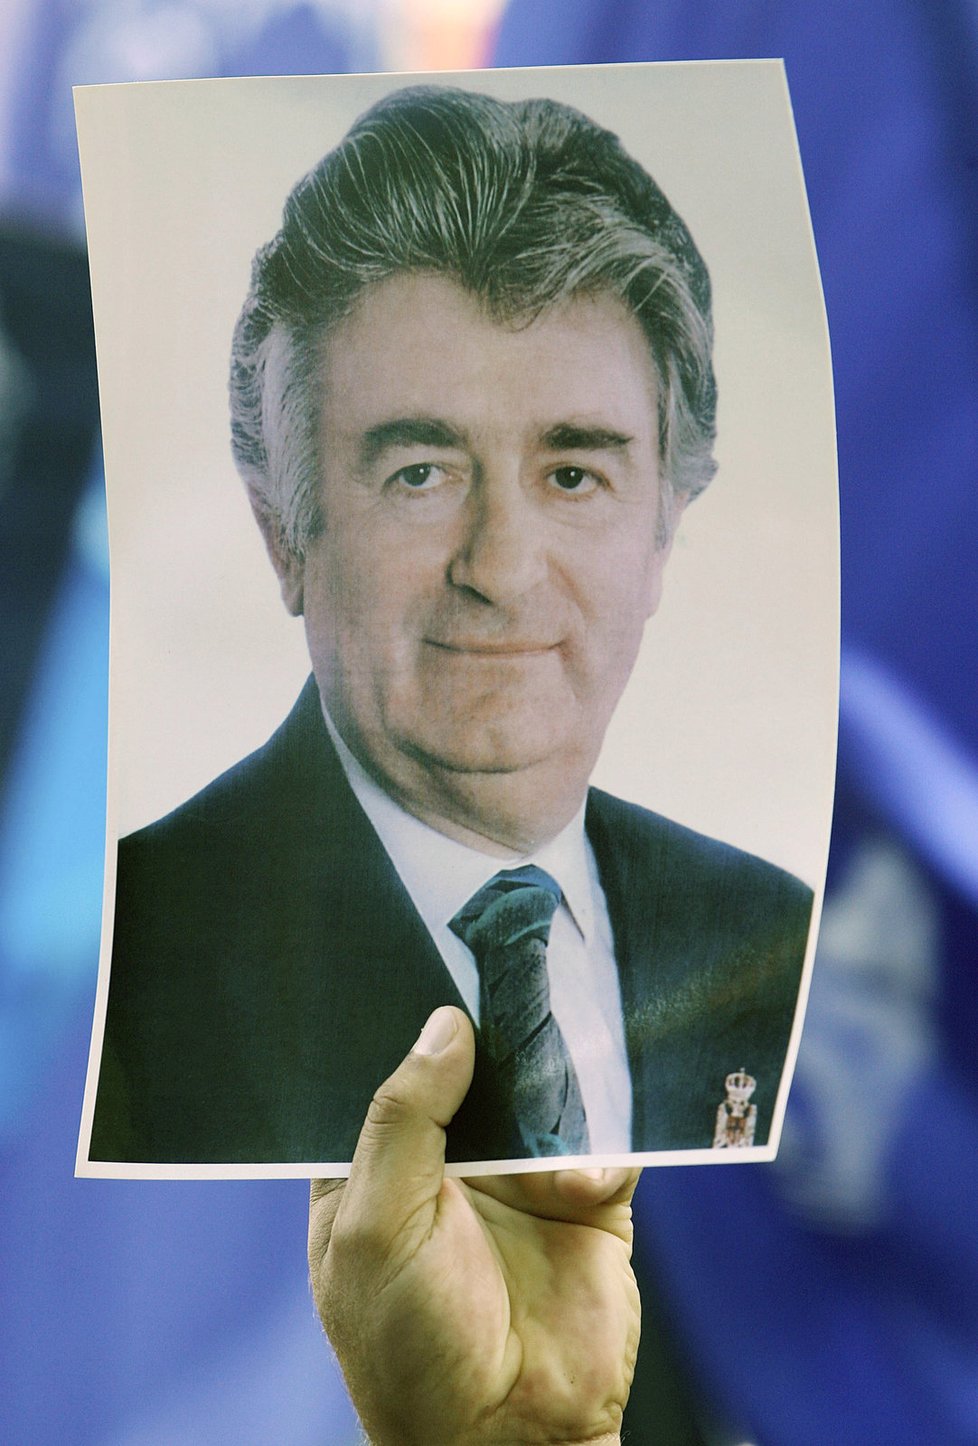 Karadžić se odvolal proti 40letému vězení: Proces v Haagu je dle něj vykonstruovaný.